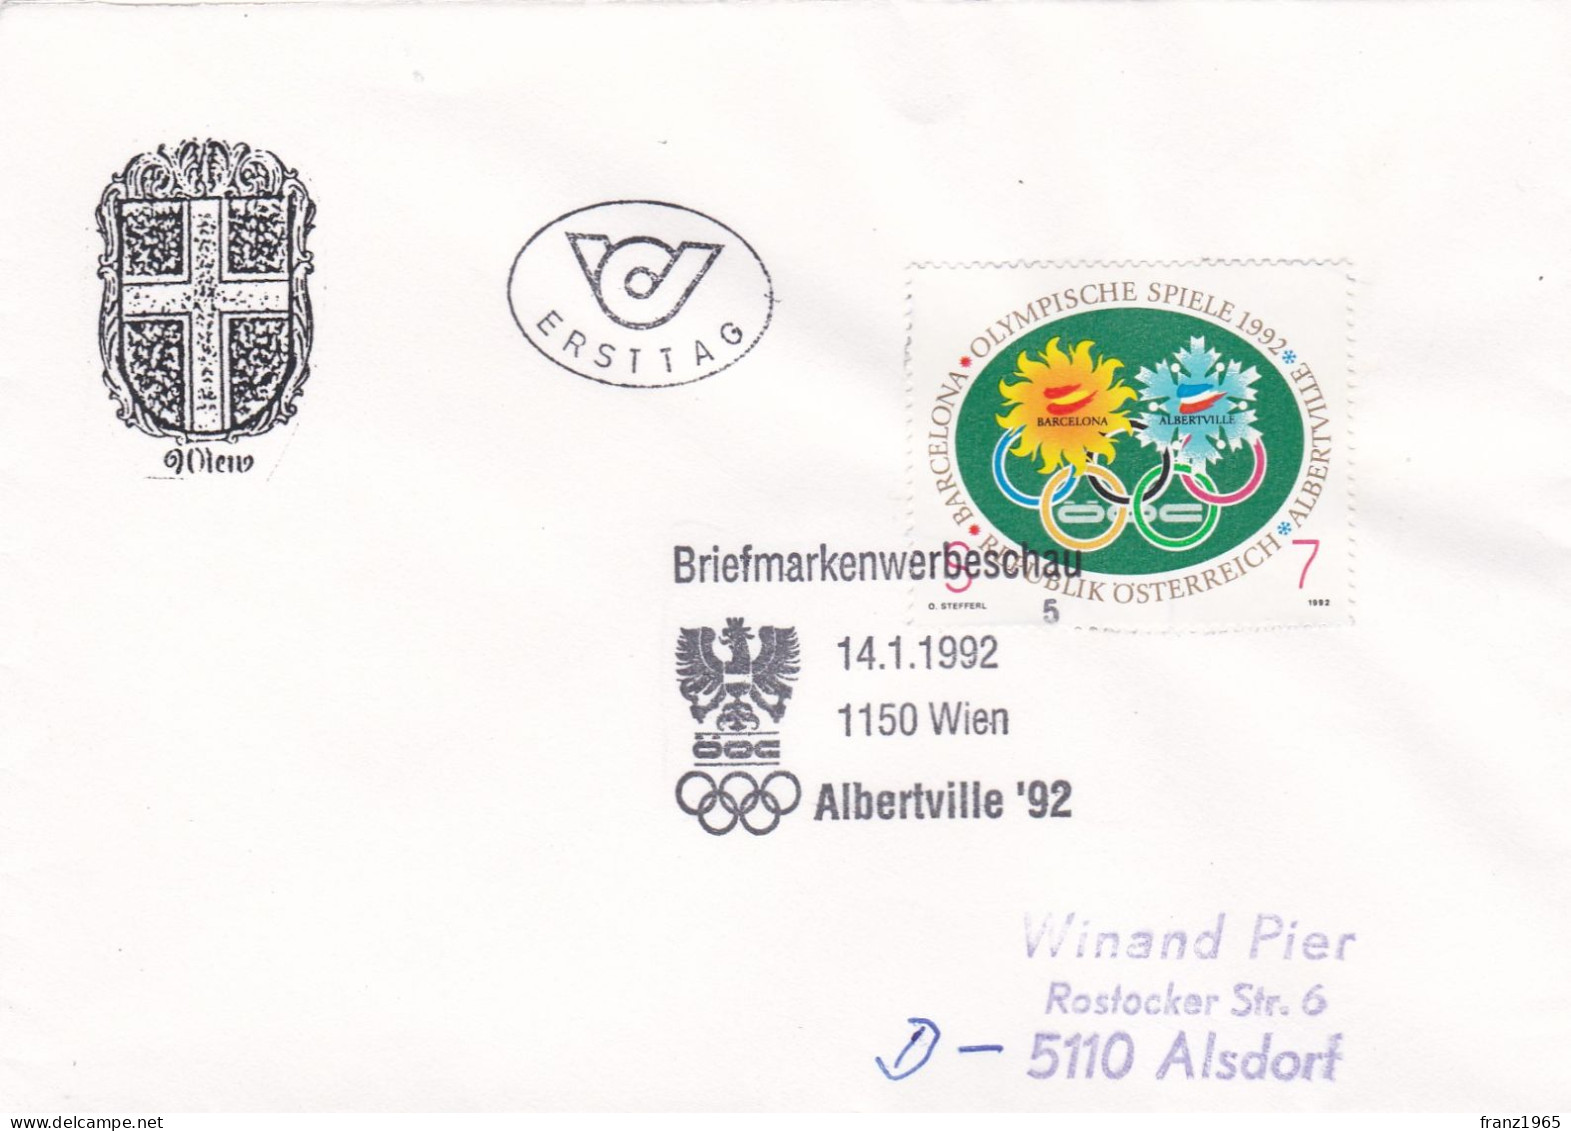 Briefemarkenwerbenschau - Albertville '92 - 1992 - Winter 1992: Albertville